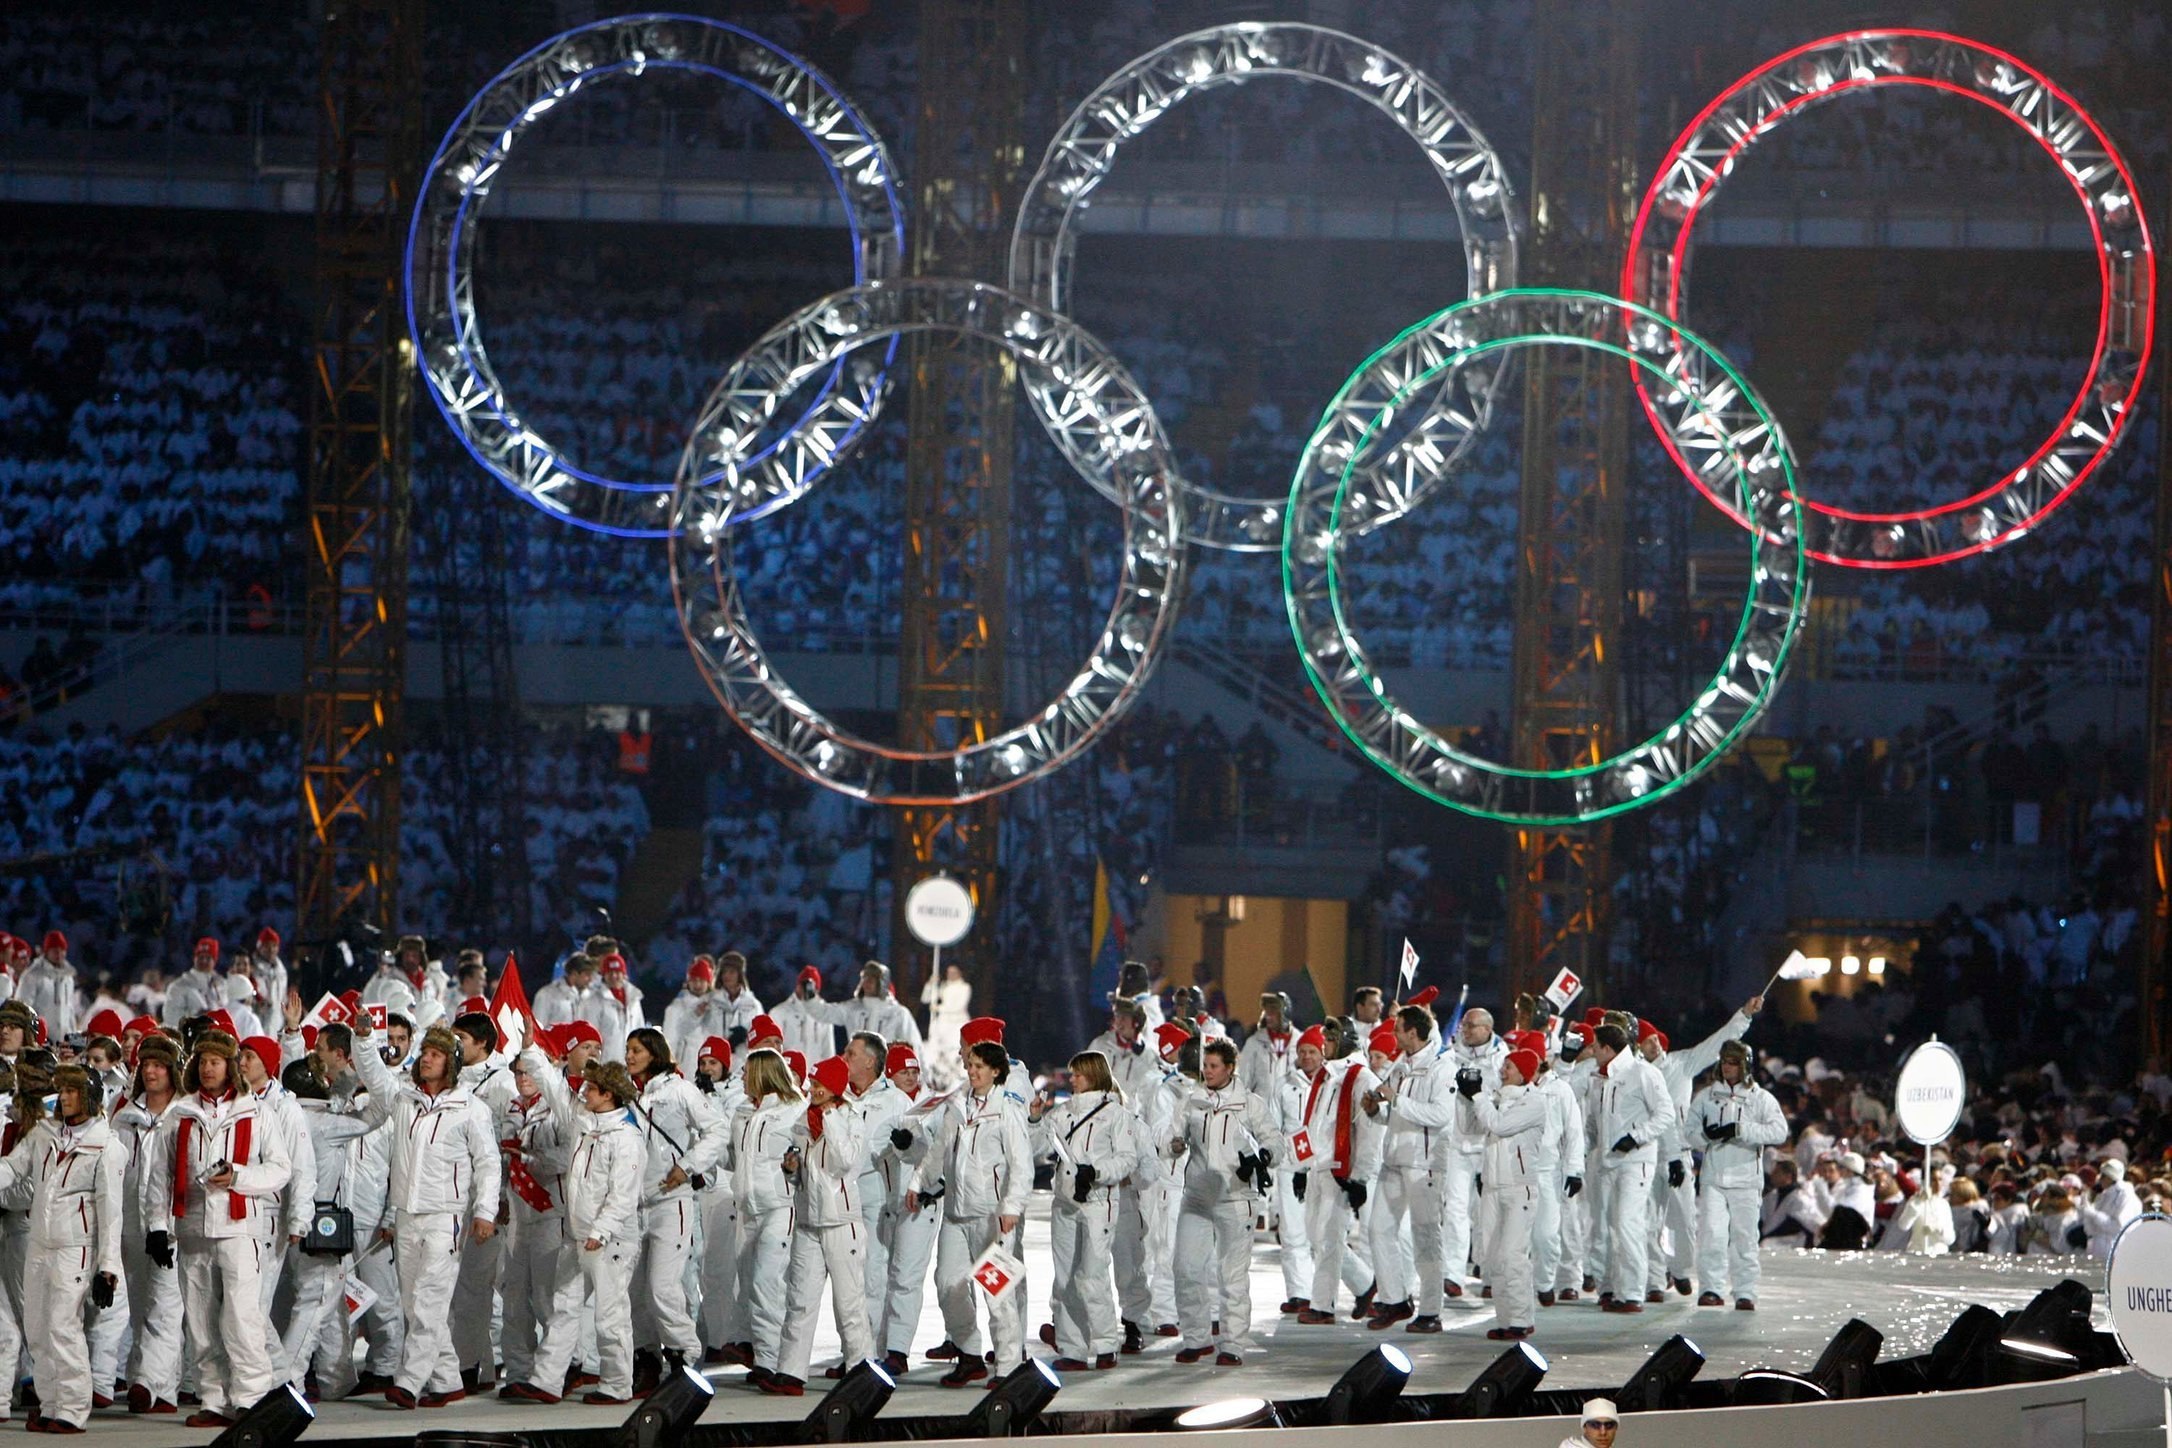 Италия принимала участие во всех олимпийских играх. Турин 2006 церемония открытия. Открытие олимпиады в Турине 2006.